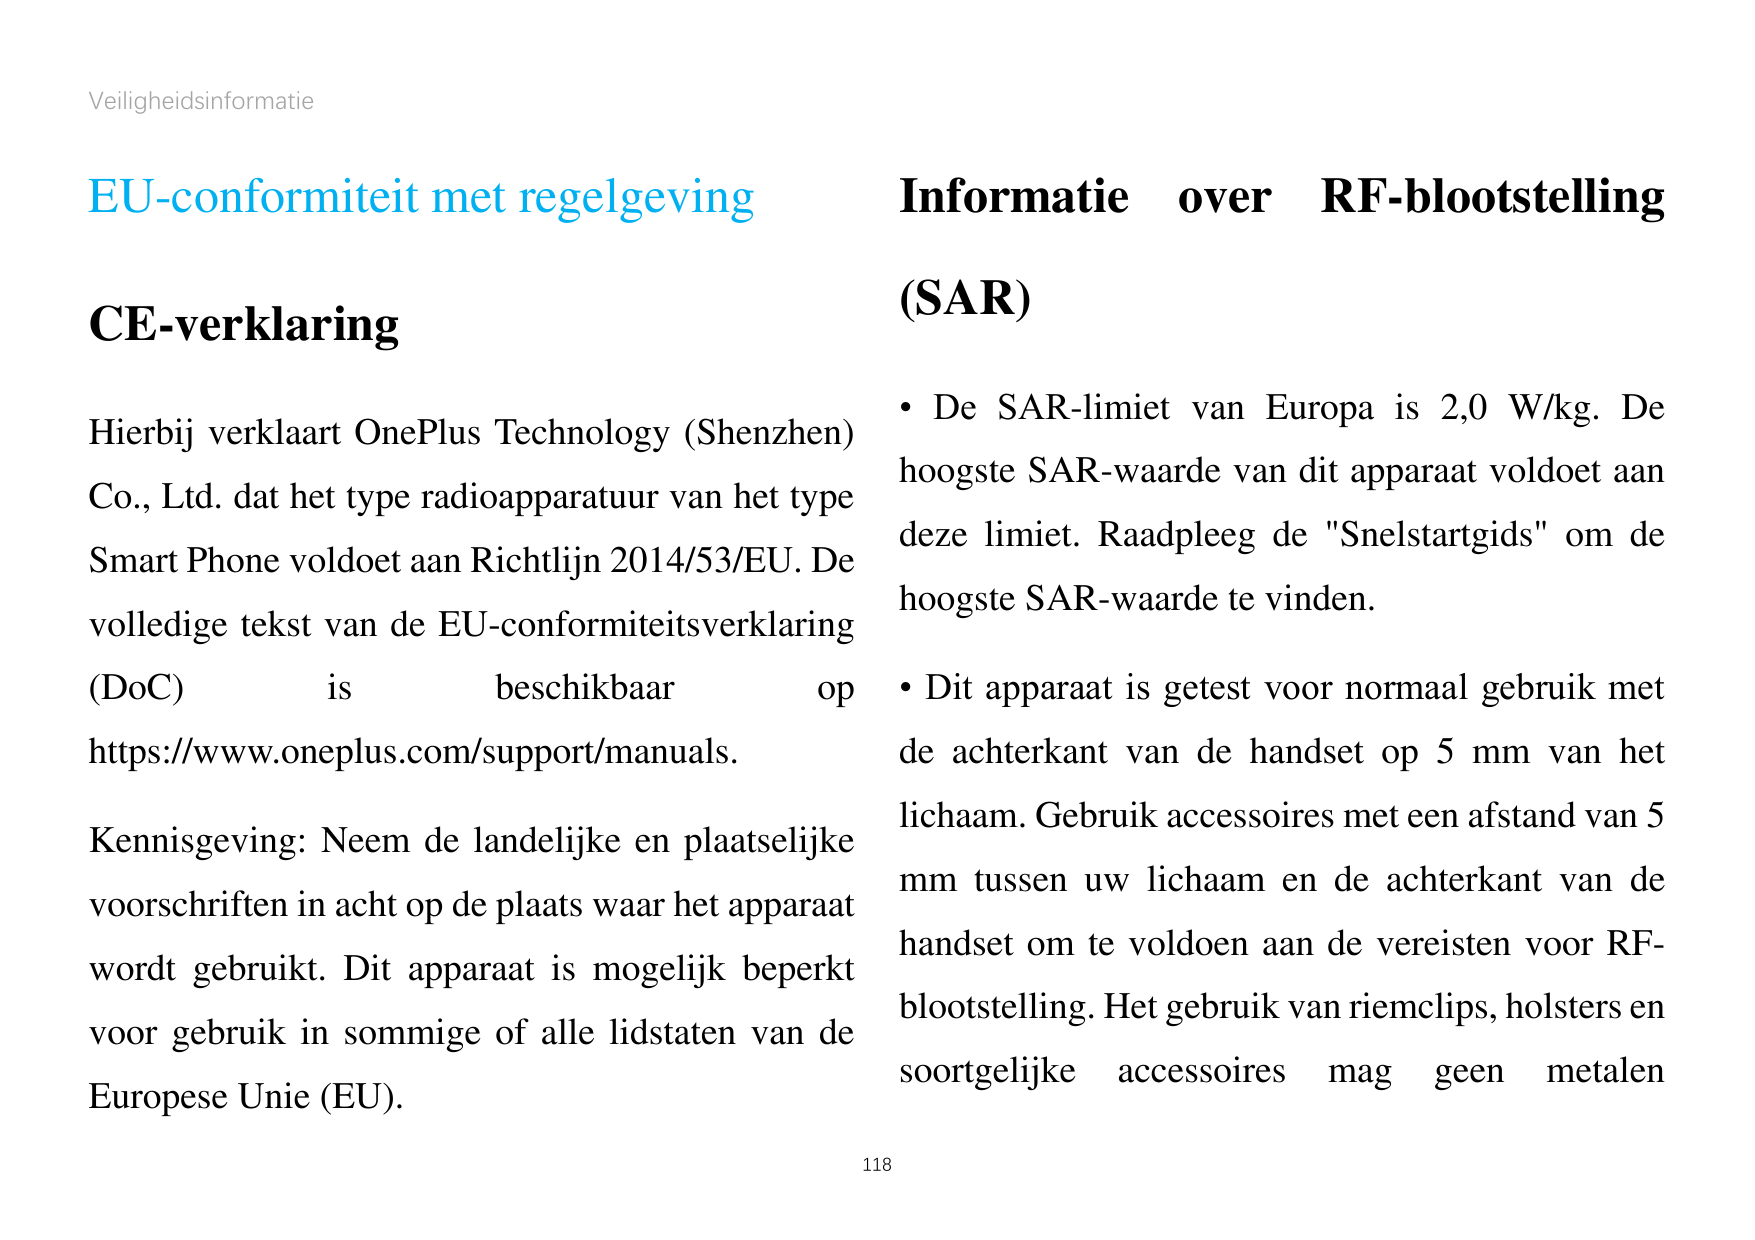 VeiligheidsinformatieEU-conformiteit met regelgevingInformatie over RF-blootstelling(SAR)CE-verklaring• De SAR-limiet van Europa